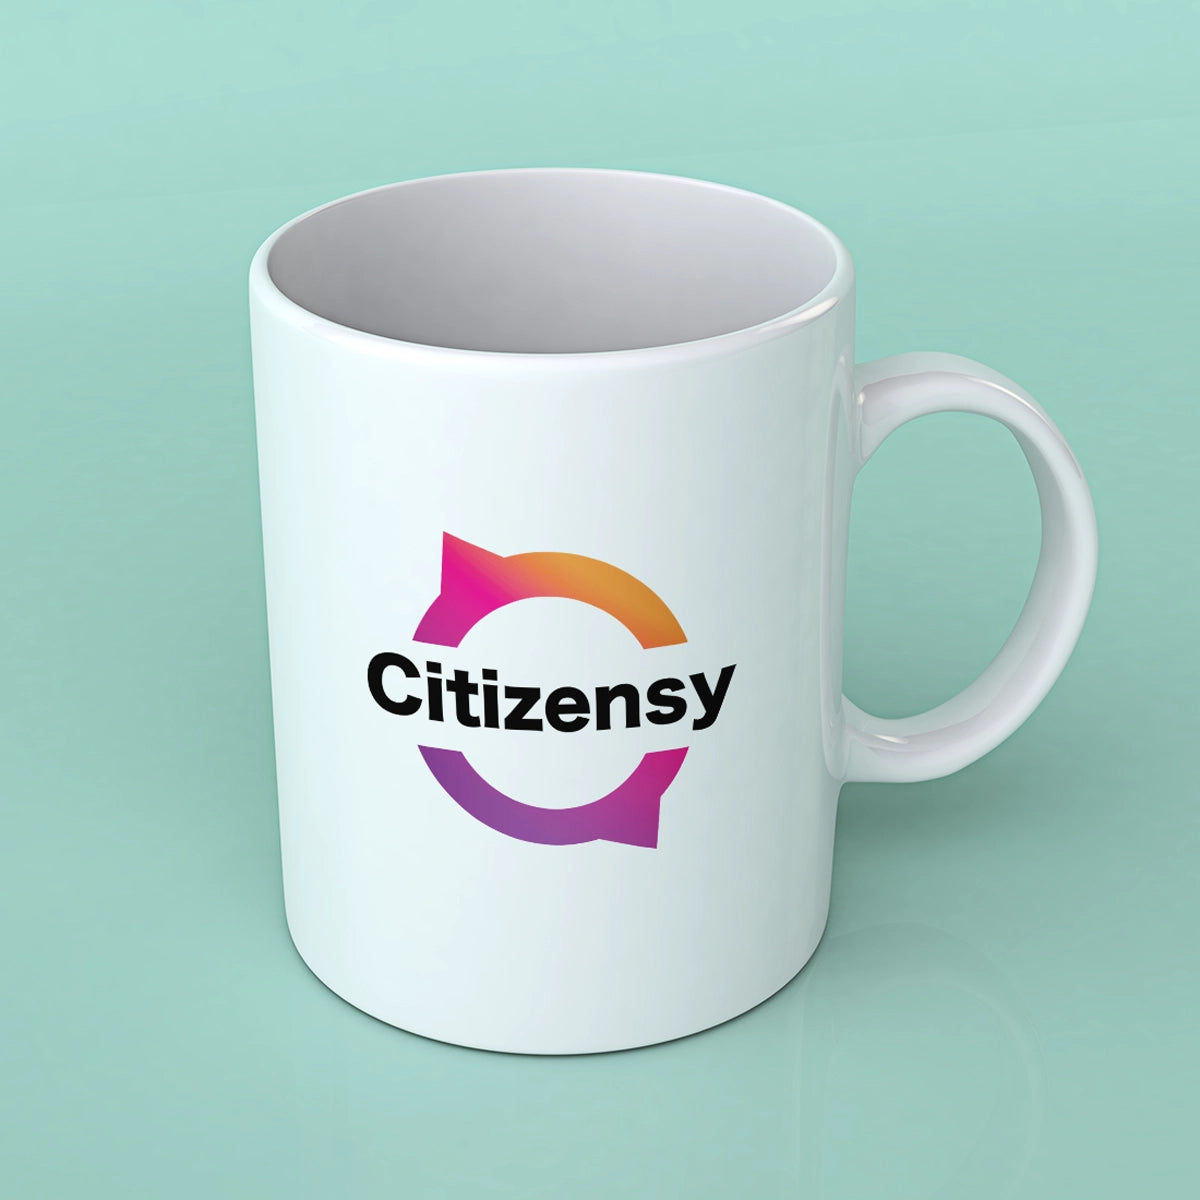 citizensy.com